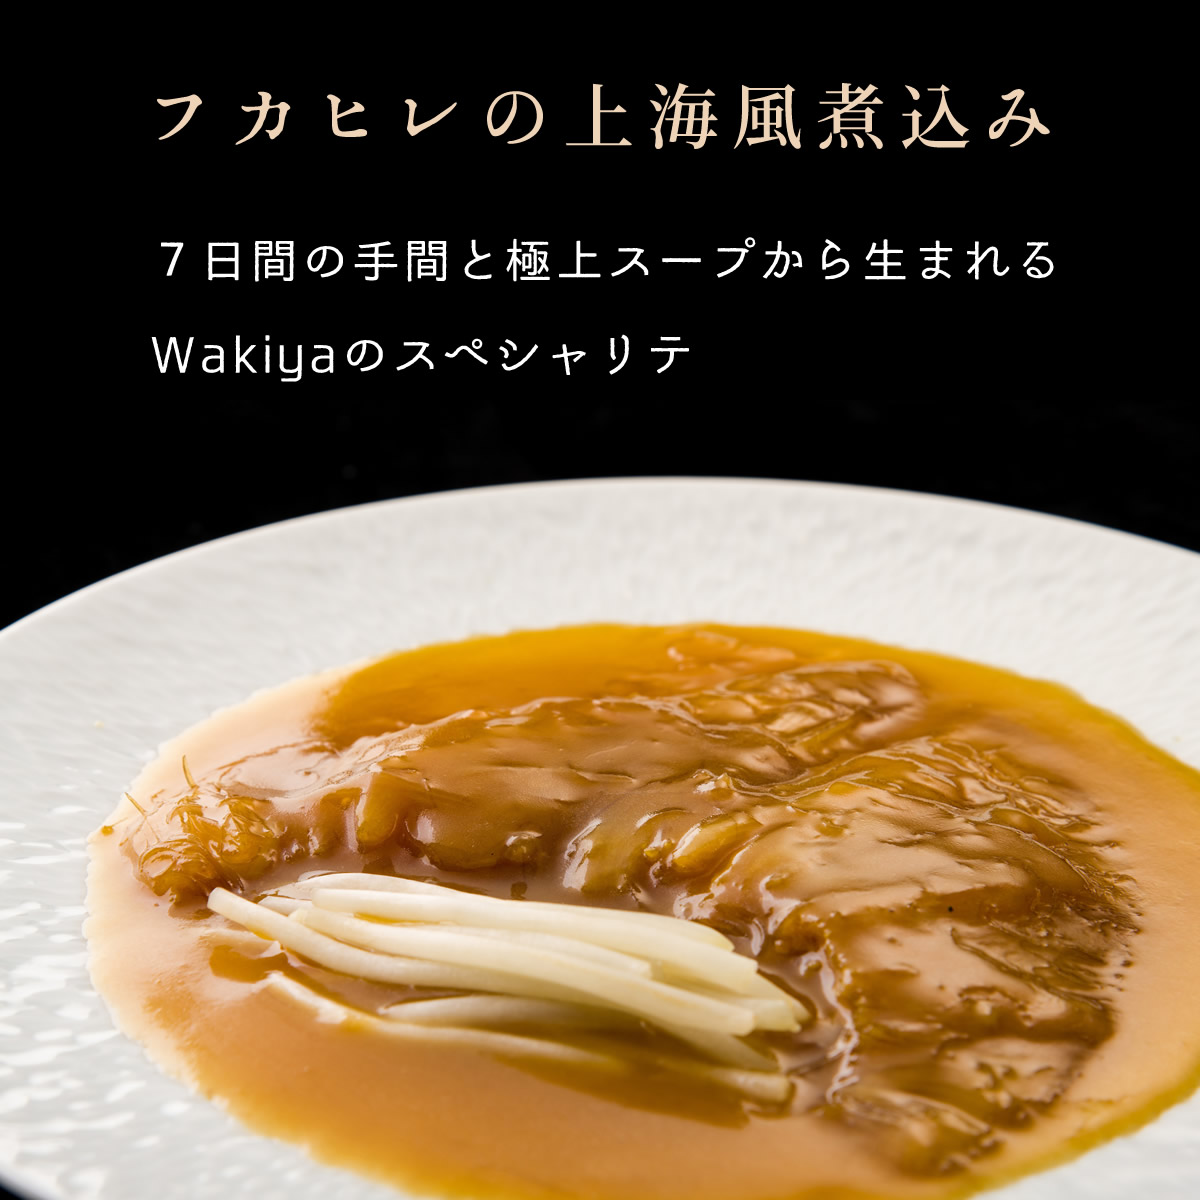 フカヒレの上海風煮込み～７日間の手間と極上スープから生まれるWakiyaのスペシャリテ。温めるだけでレストランの味を完全再現。